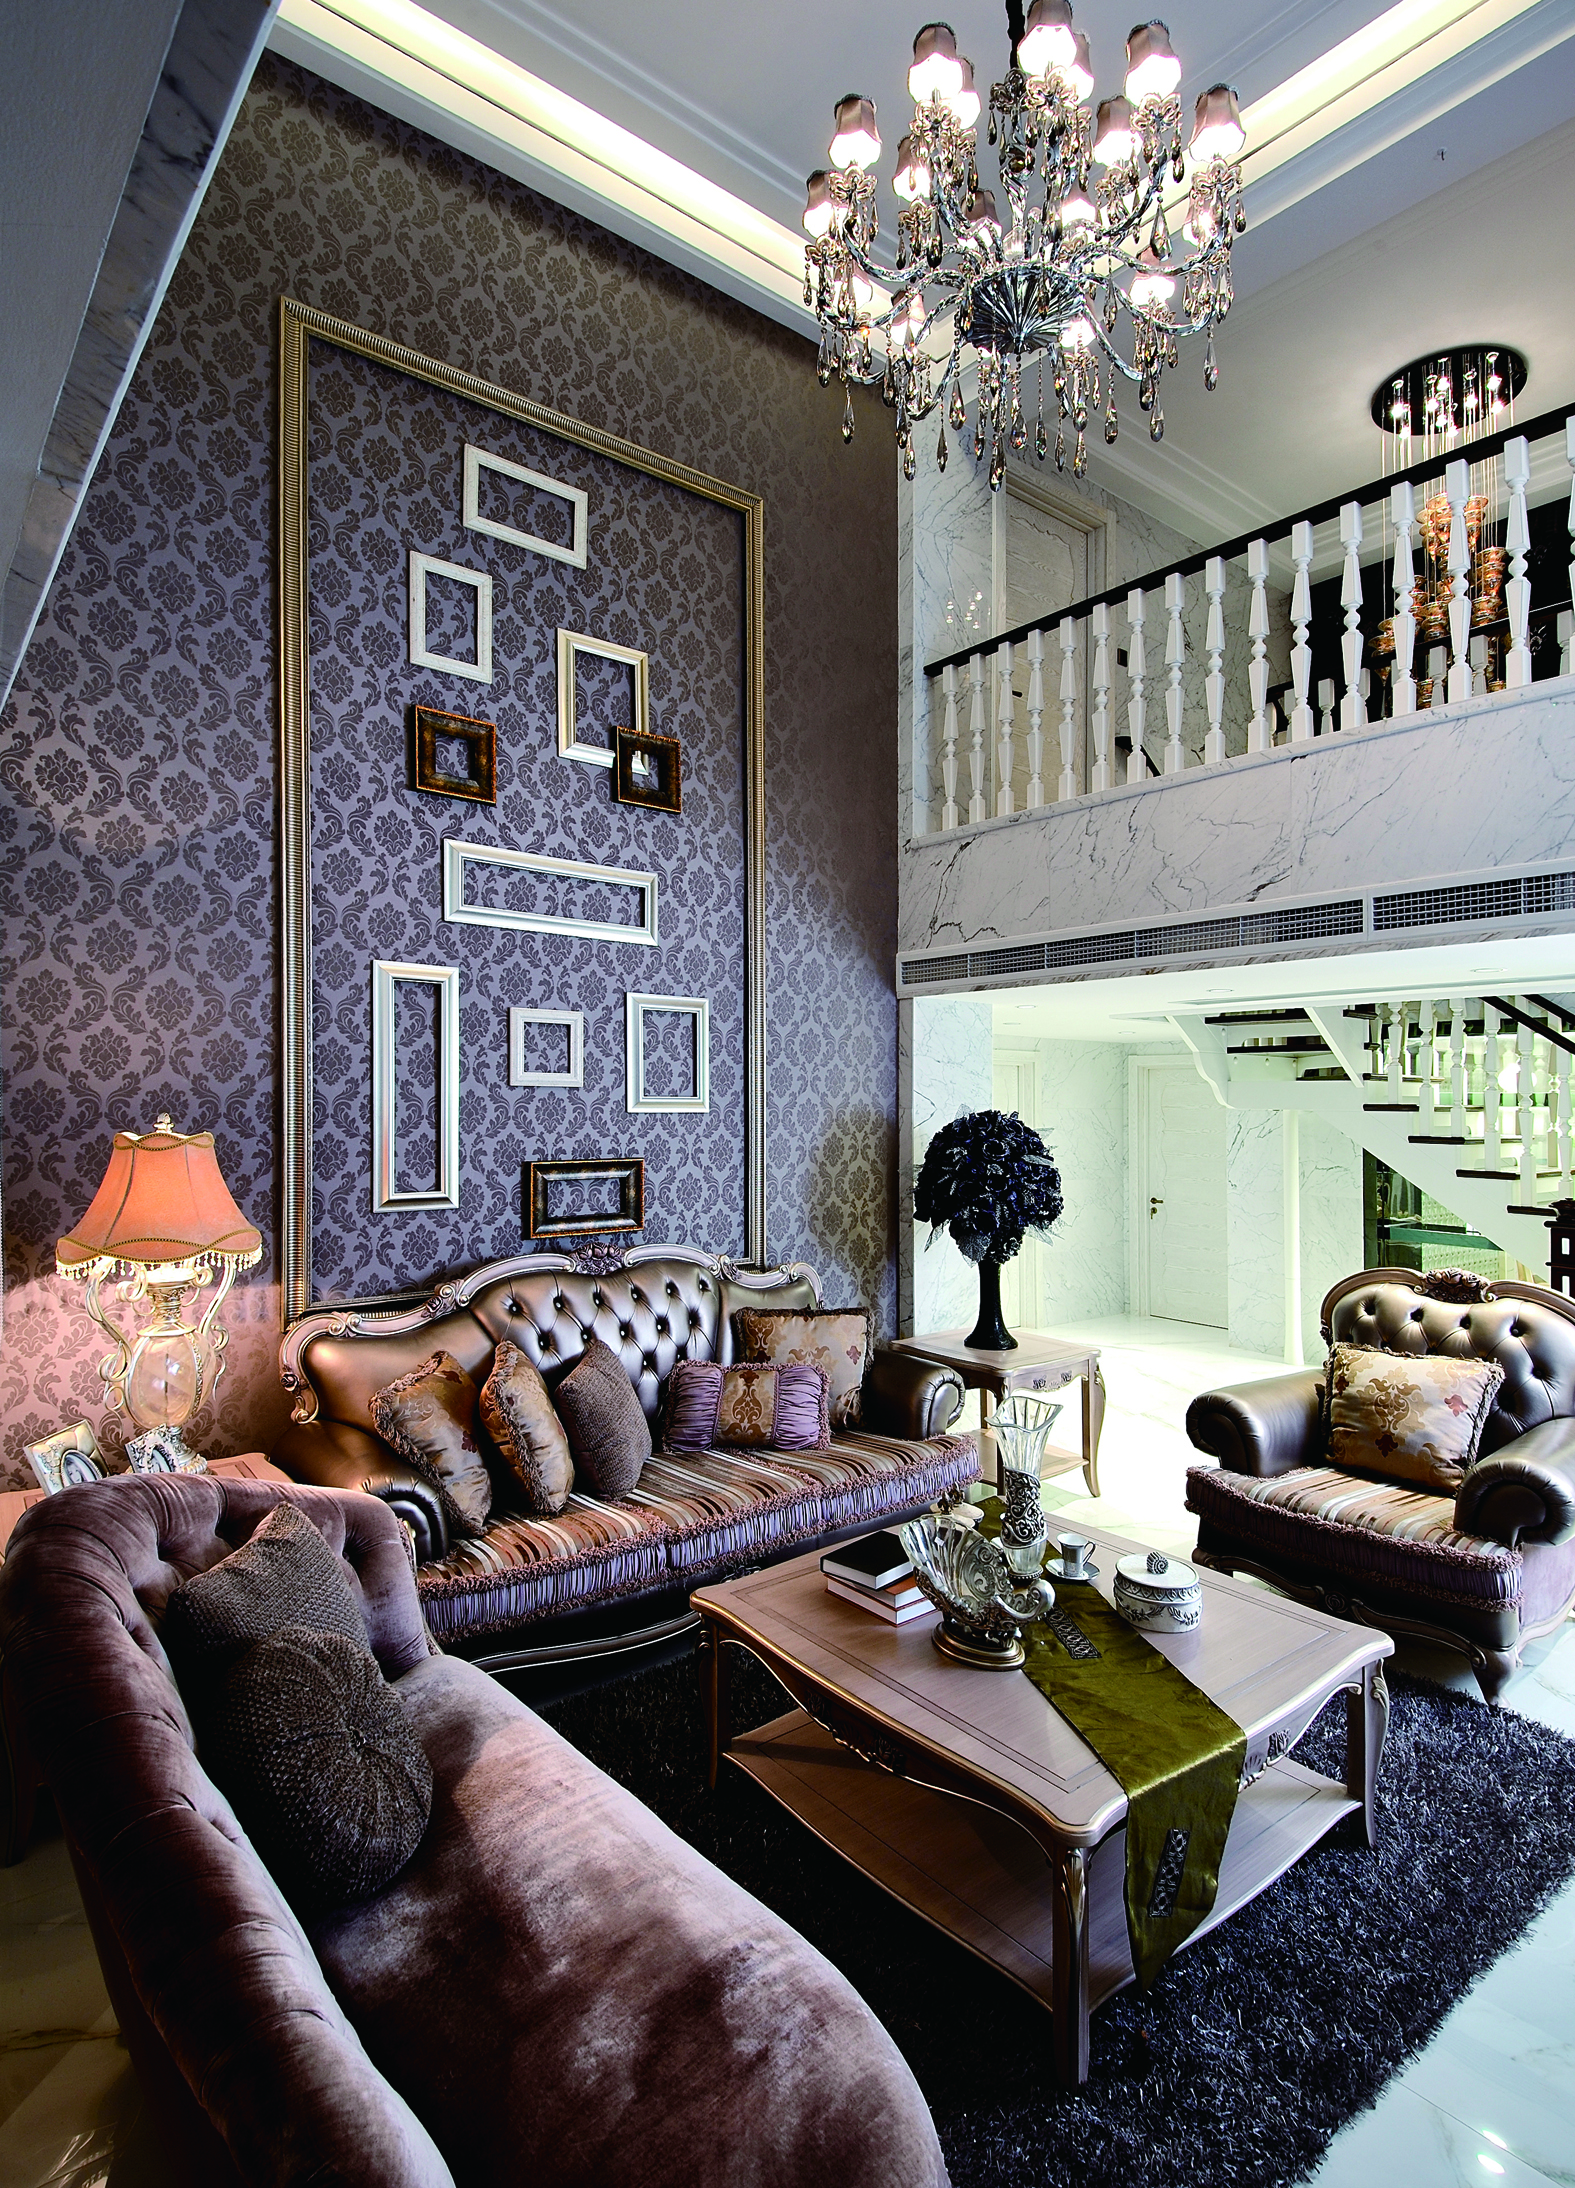 磨砂布艺沙发搭配水晶灯散发着欧式的华美与浪漫。